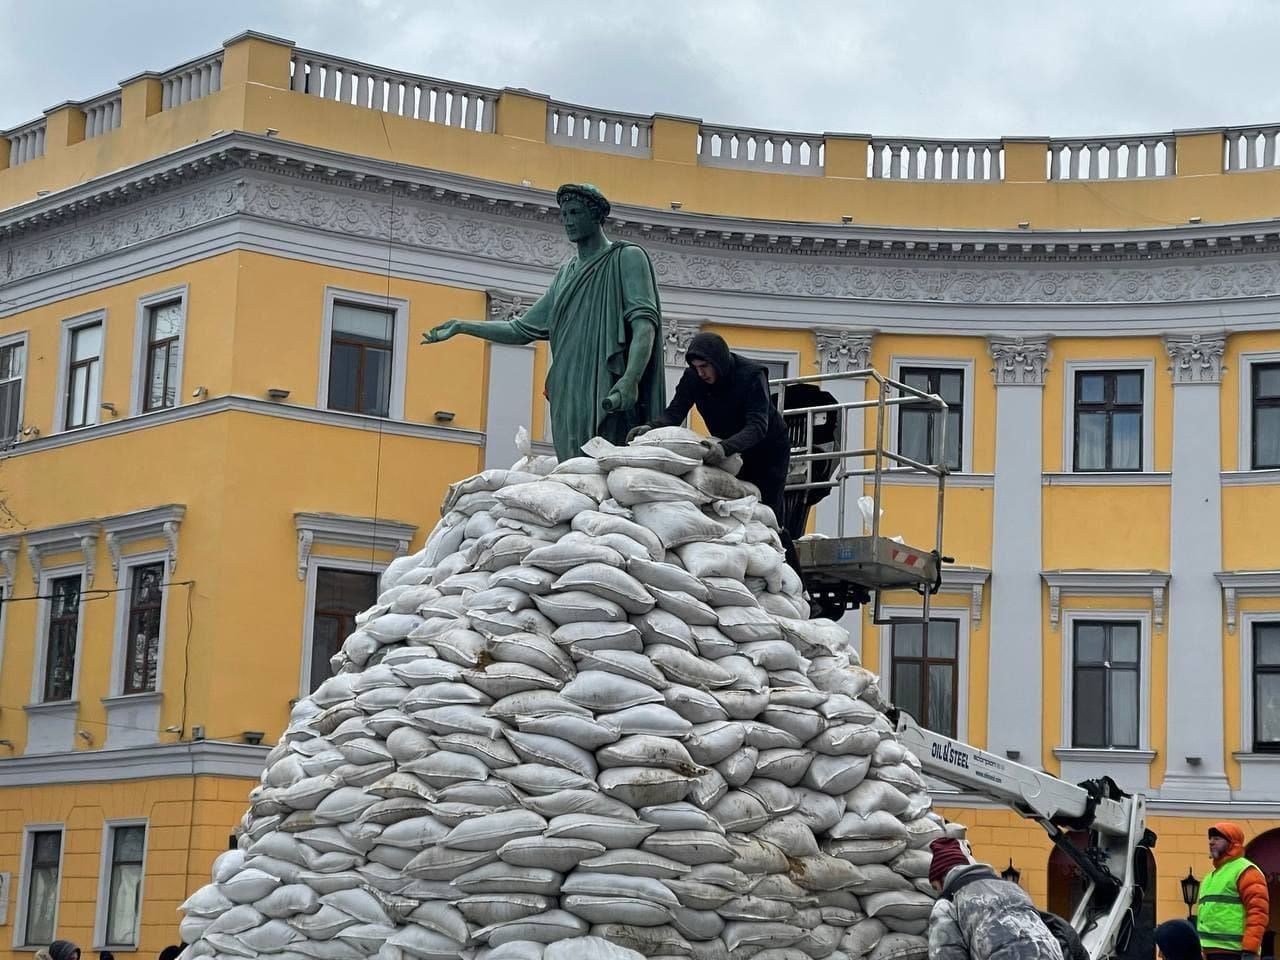 Памятник Дюку Ришелье в Одессе обкладывают мешками с песком